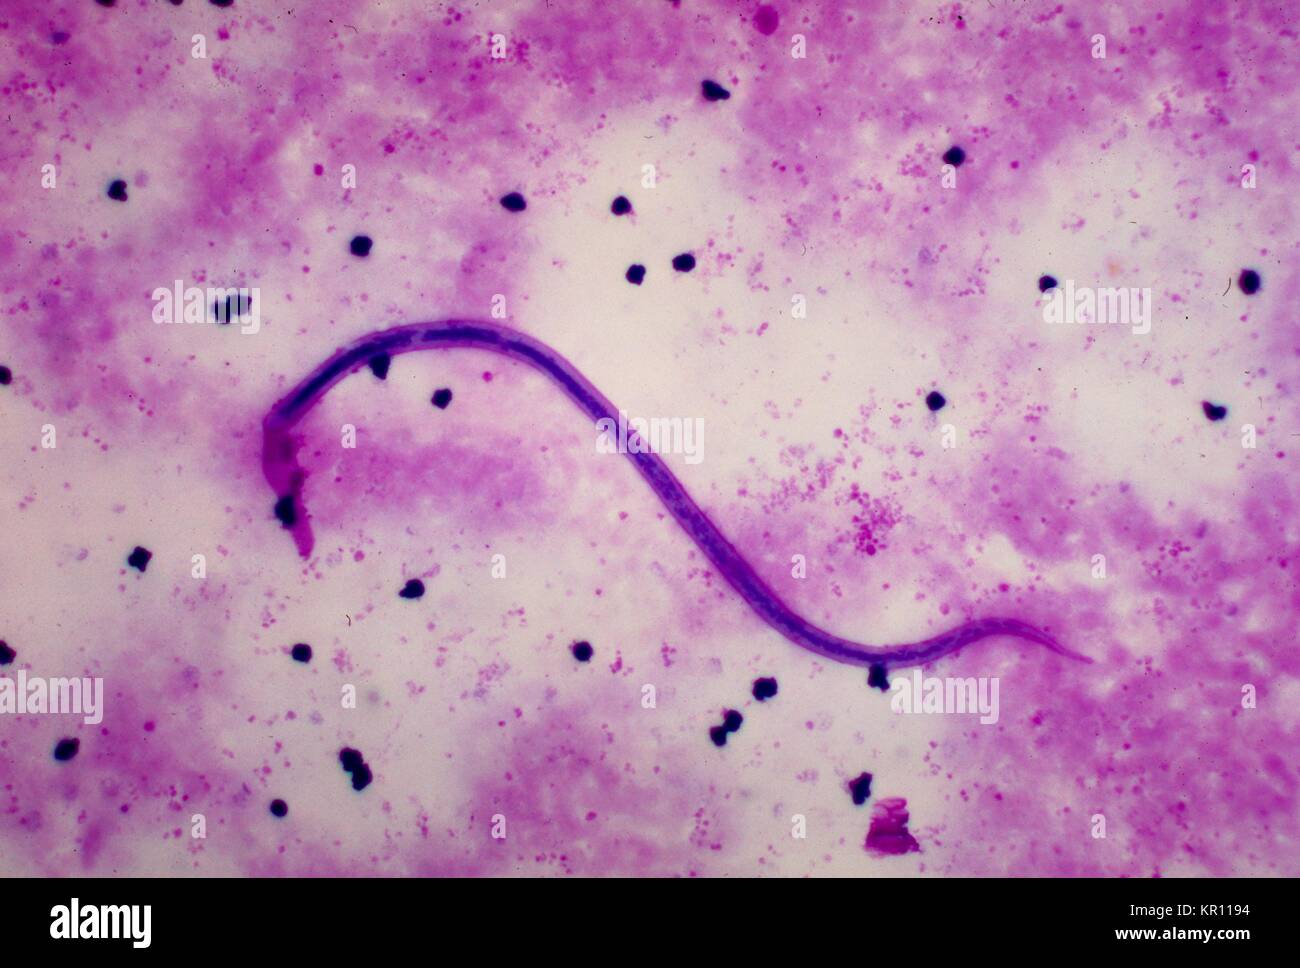 Dies ist eine Aufnahme eines Wuchereria bancrofti microfilaria in einer dicken mit Giemsa Fleck Technik, 1977 Blut verschmiert. W. bancrofti, der häufigsten filarial Parasit im Menschen, ist eines der Erreger, die an lymphatischer Filariose erkrankt sind. Die lymphatische Filariose wirkt sich auf schätzungsweise 120 Millionen Menschen in tropischen Gebieten der Welt. Bild mit freundlicher Genehmigung von CDC/Dr. Mae Melvin. Stockfoto